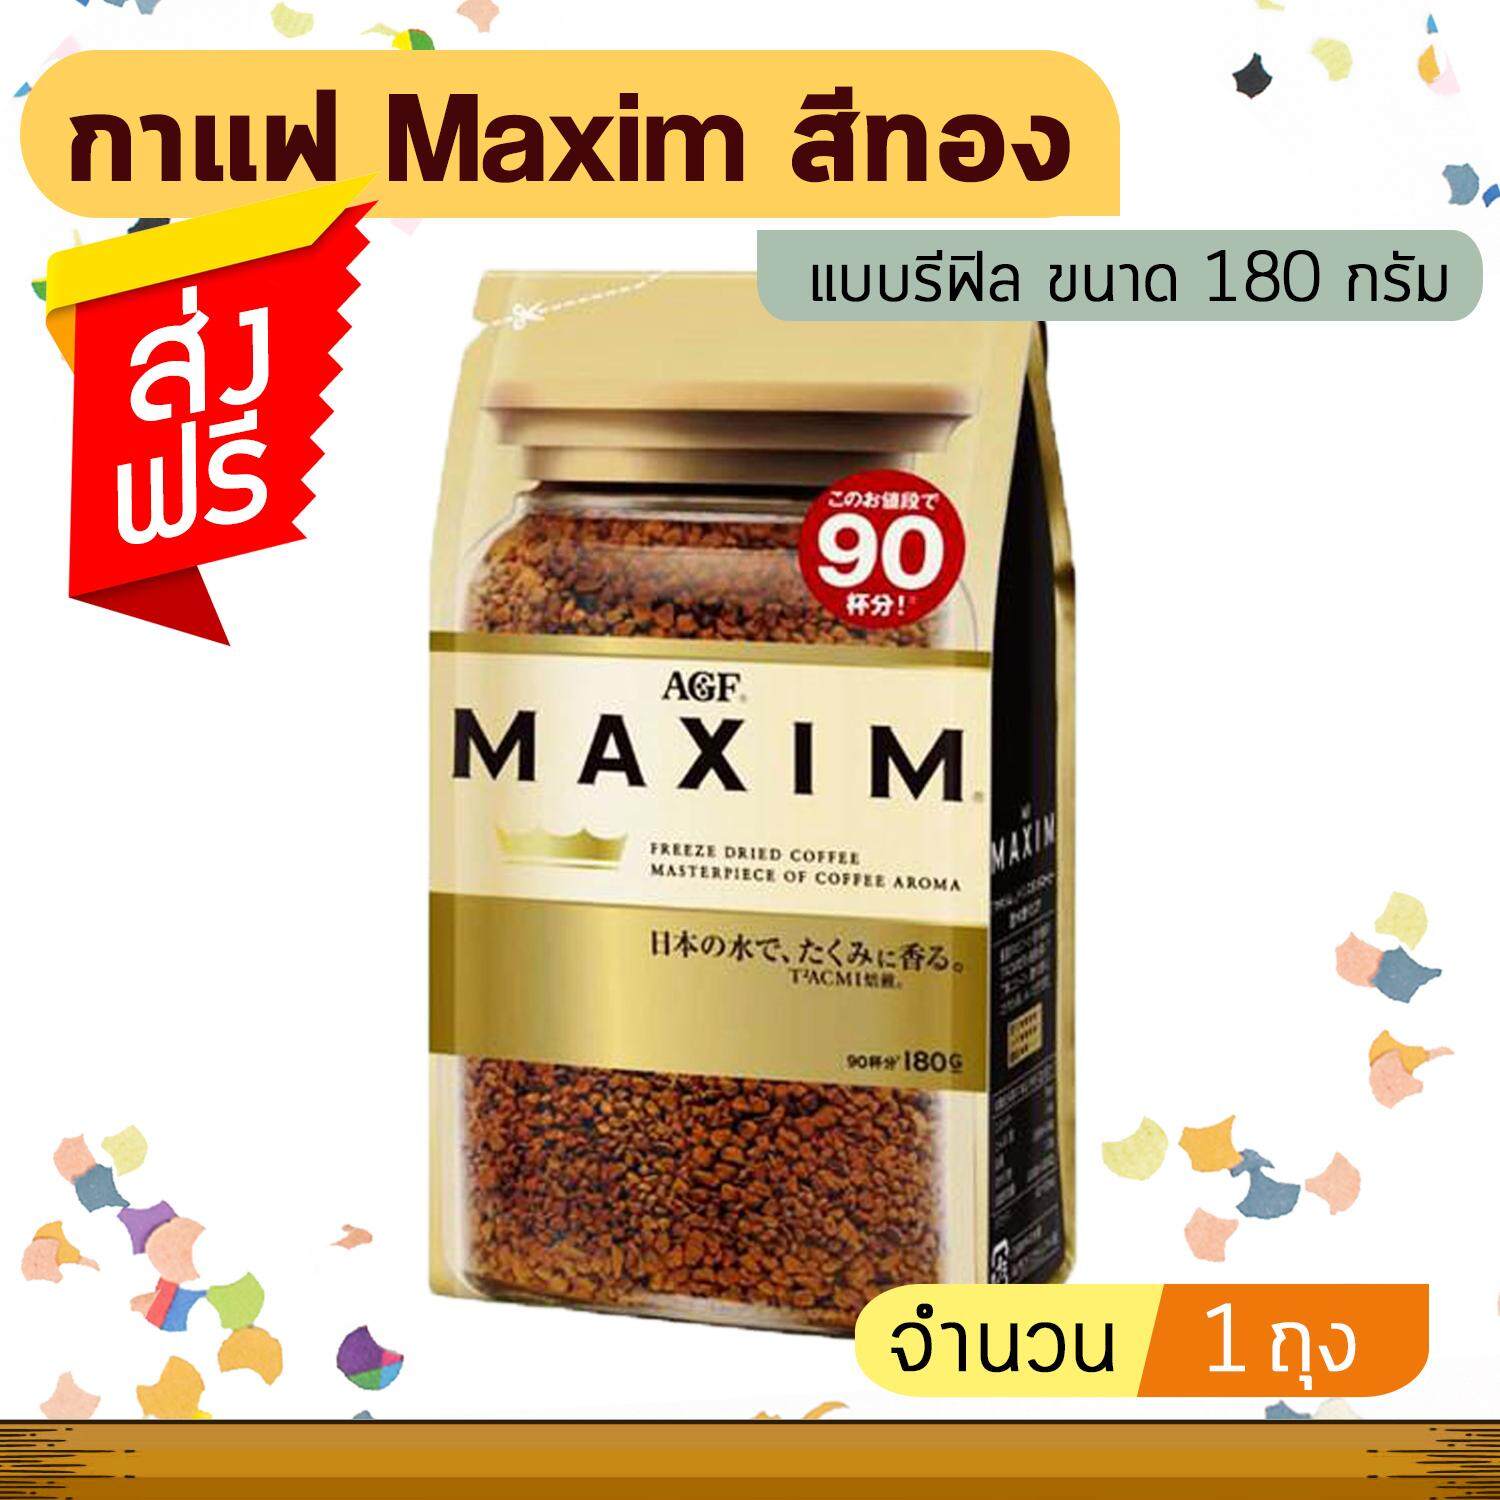 กาแฟ Maxim Aroma Select กาแฟแม็กซิม สีทอง แบบรีฟิล (ขนาด 180 กรัม จำนวน 1 ถุง)